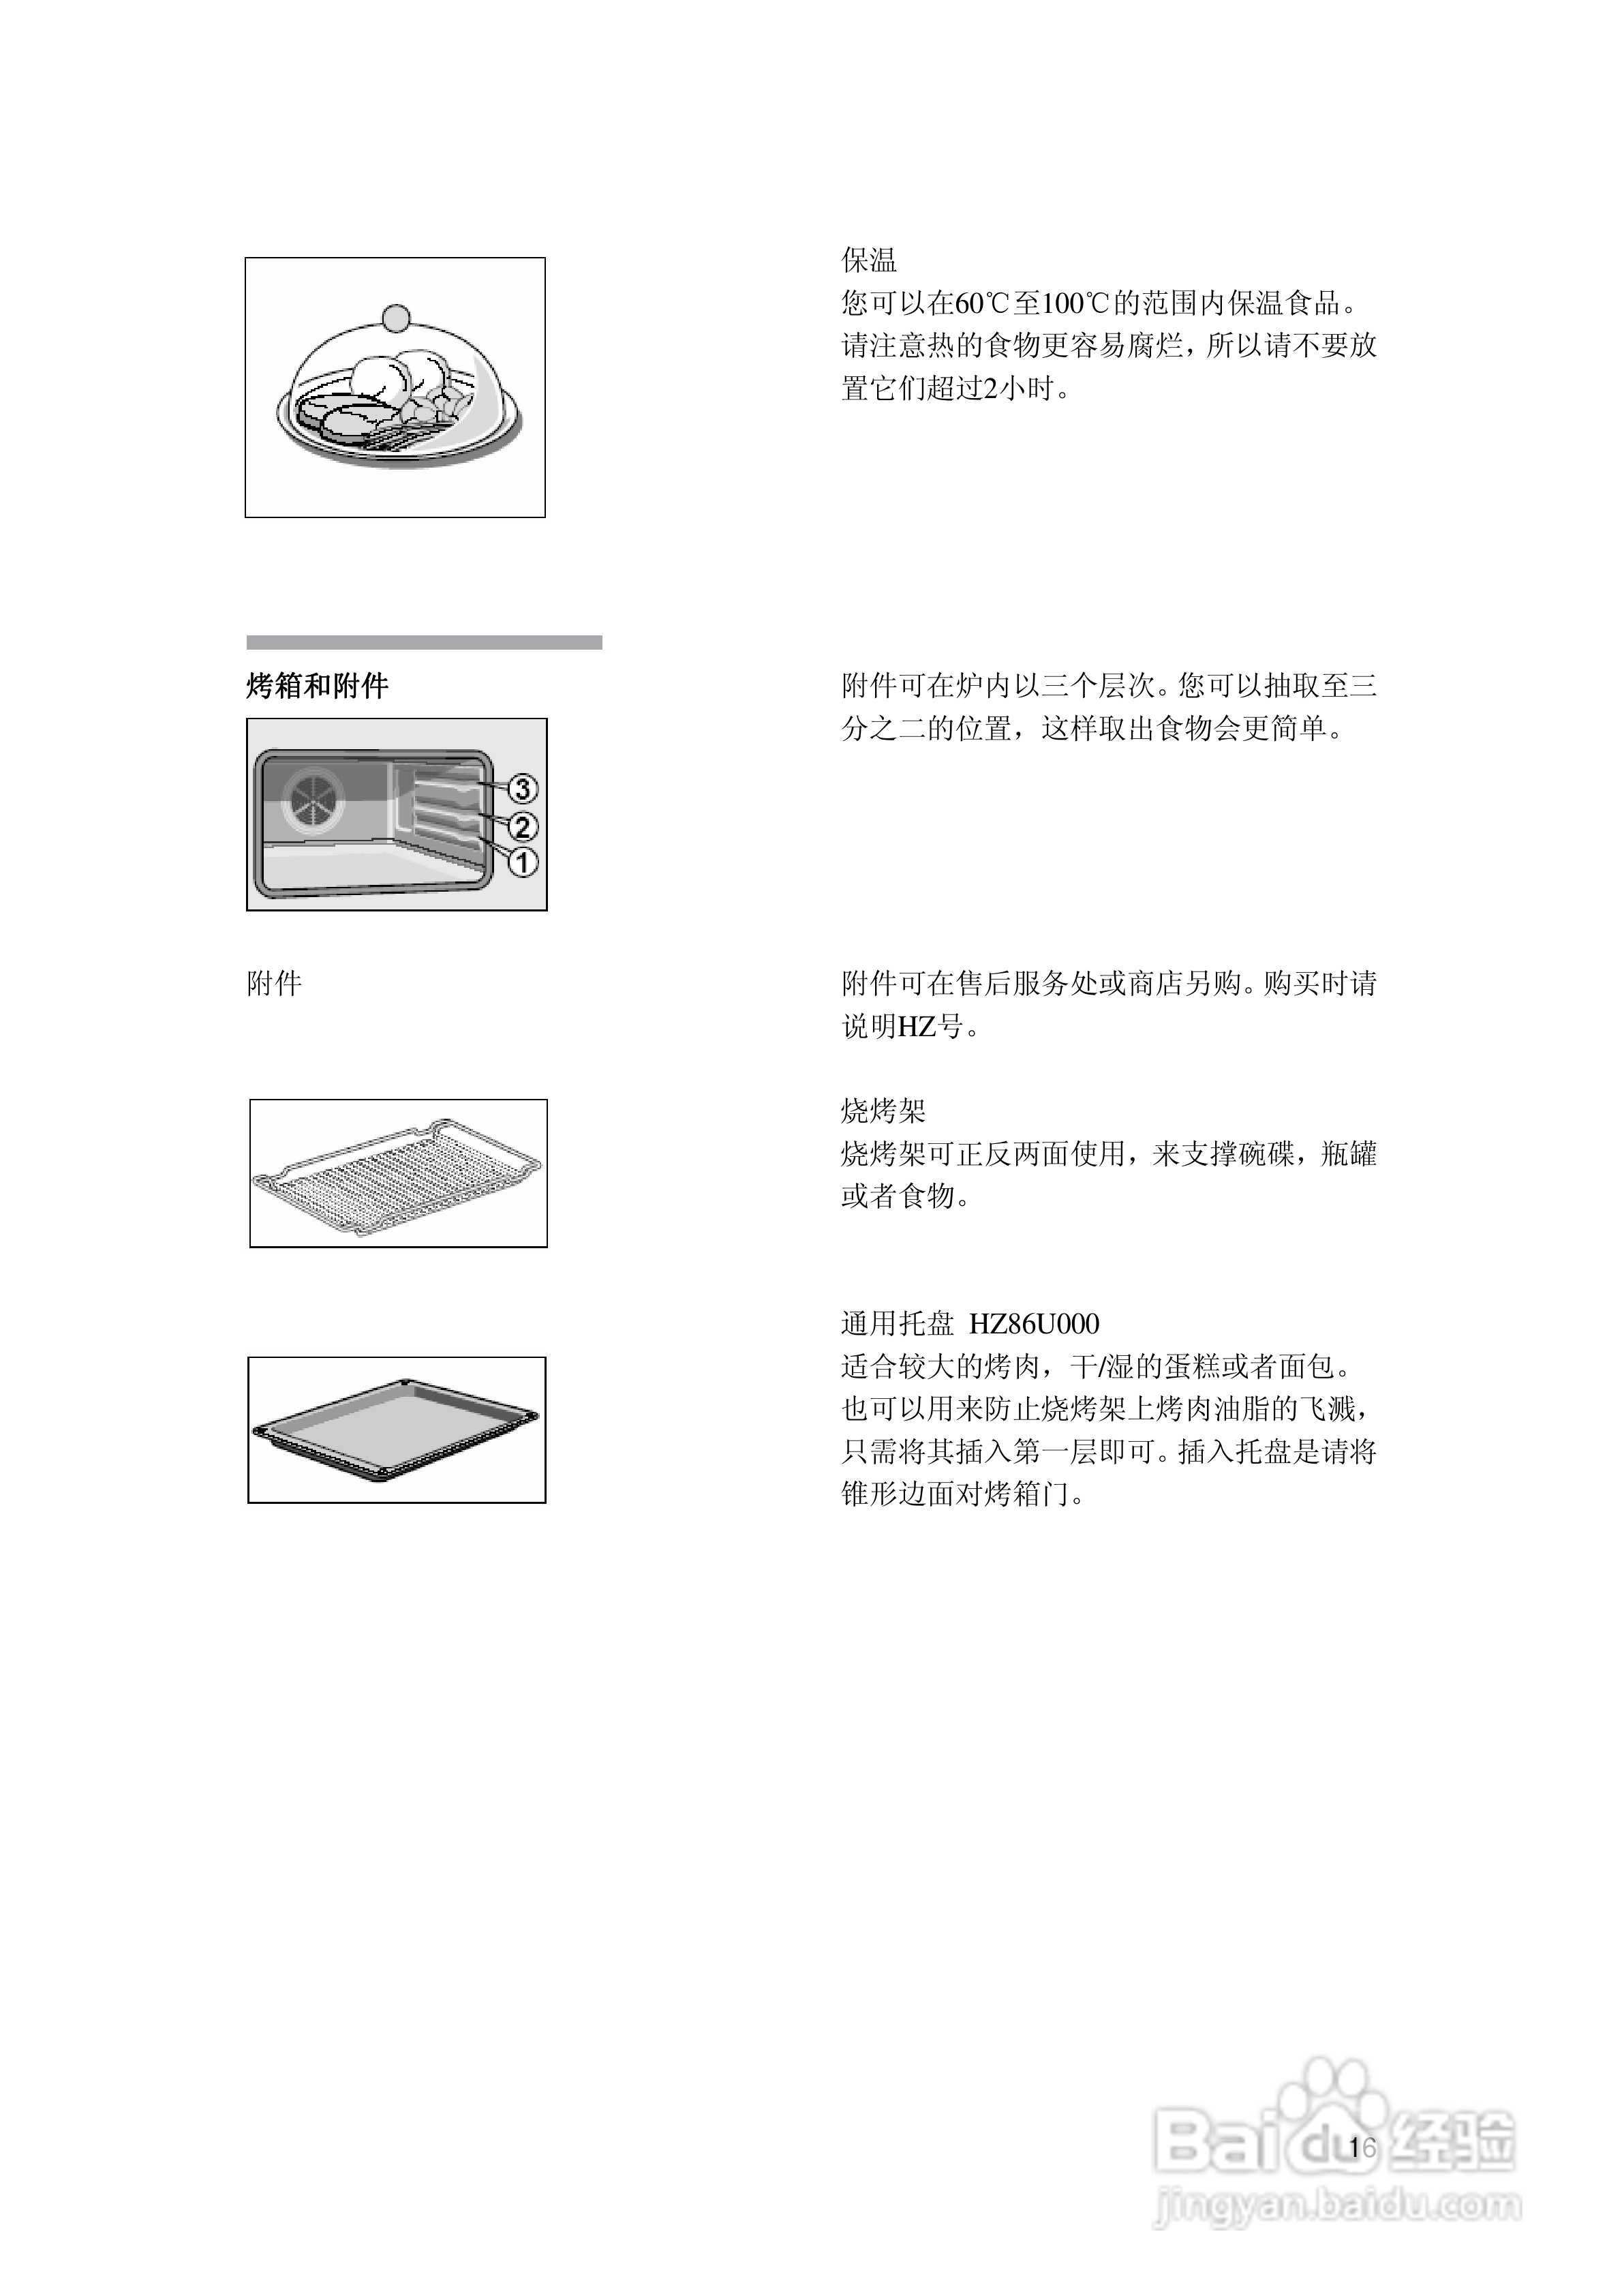 西门子hb86k770烤箱使用说明书:[2]